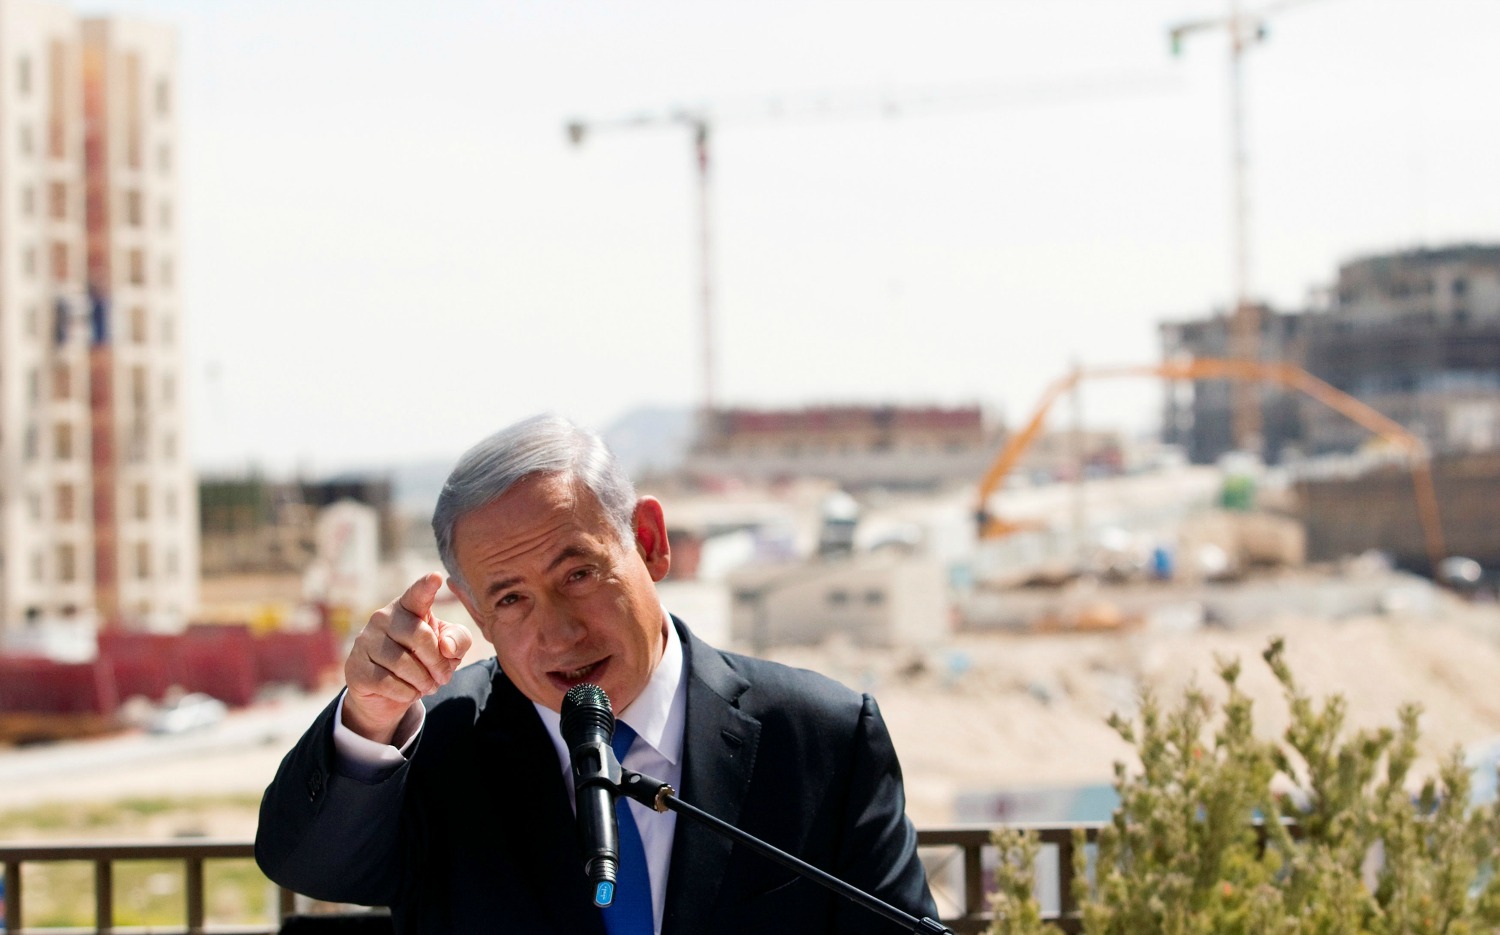 Ofensiva de Netanyahu contra la ONU tras votar en contra de los asentamientos judíos